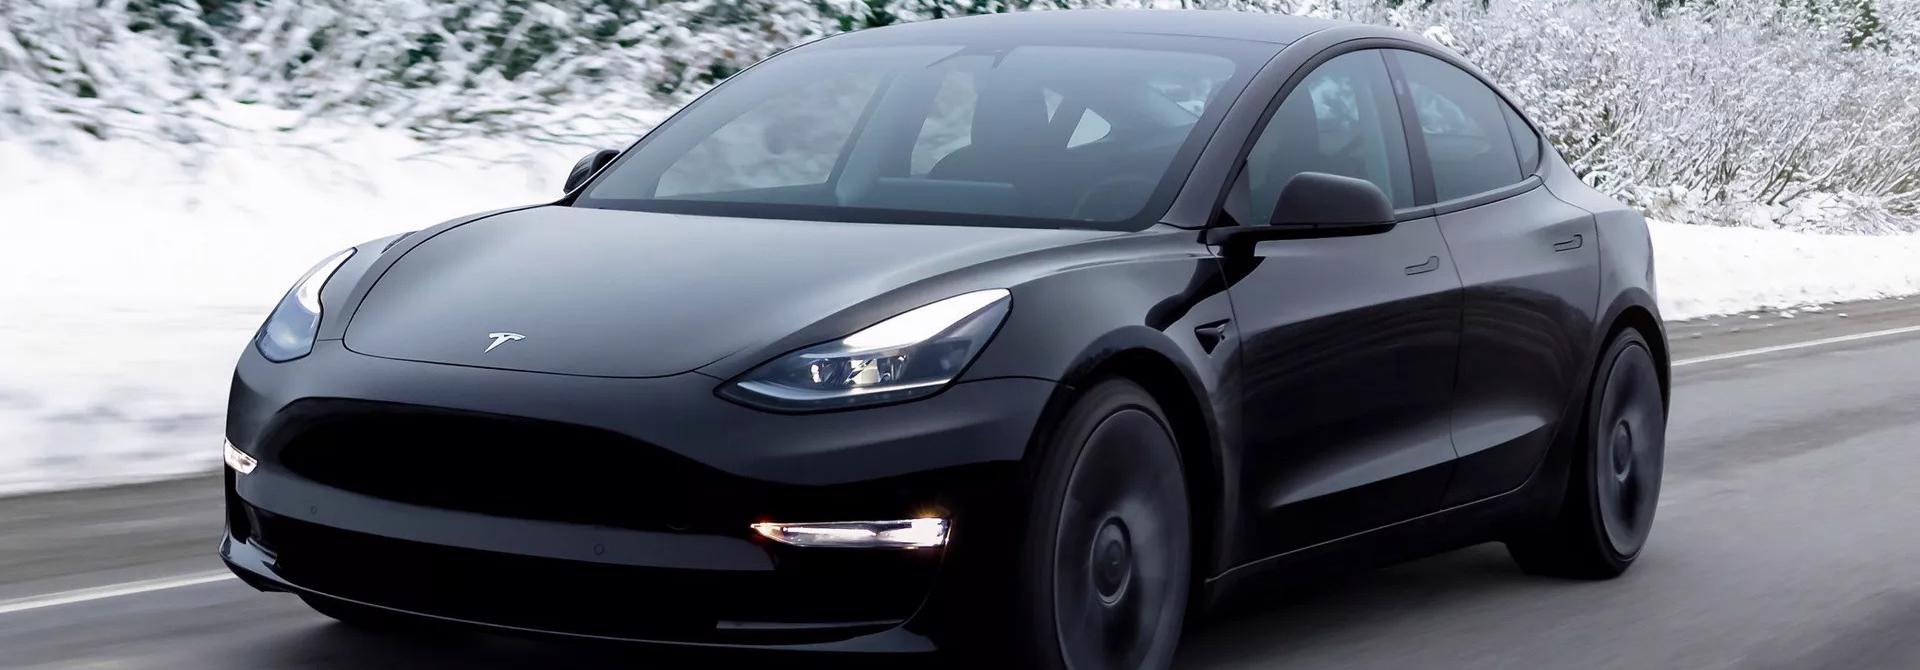 Tesla triệu hồi hơn 24.000 xe Model 3 vì lỗi dây đai an toàn